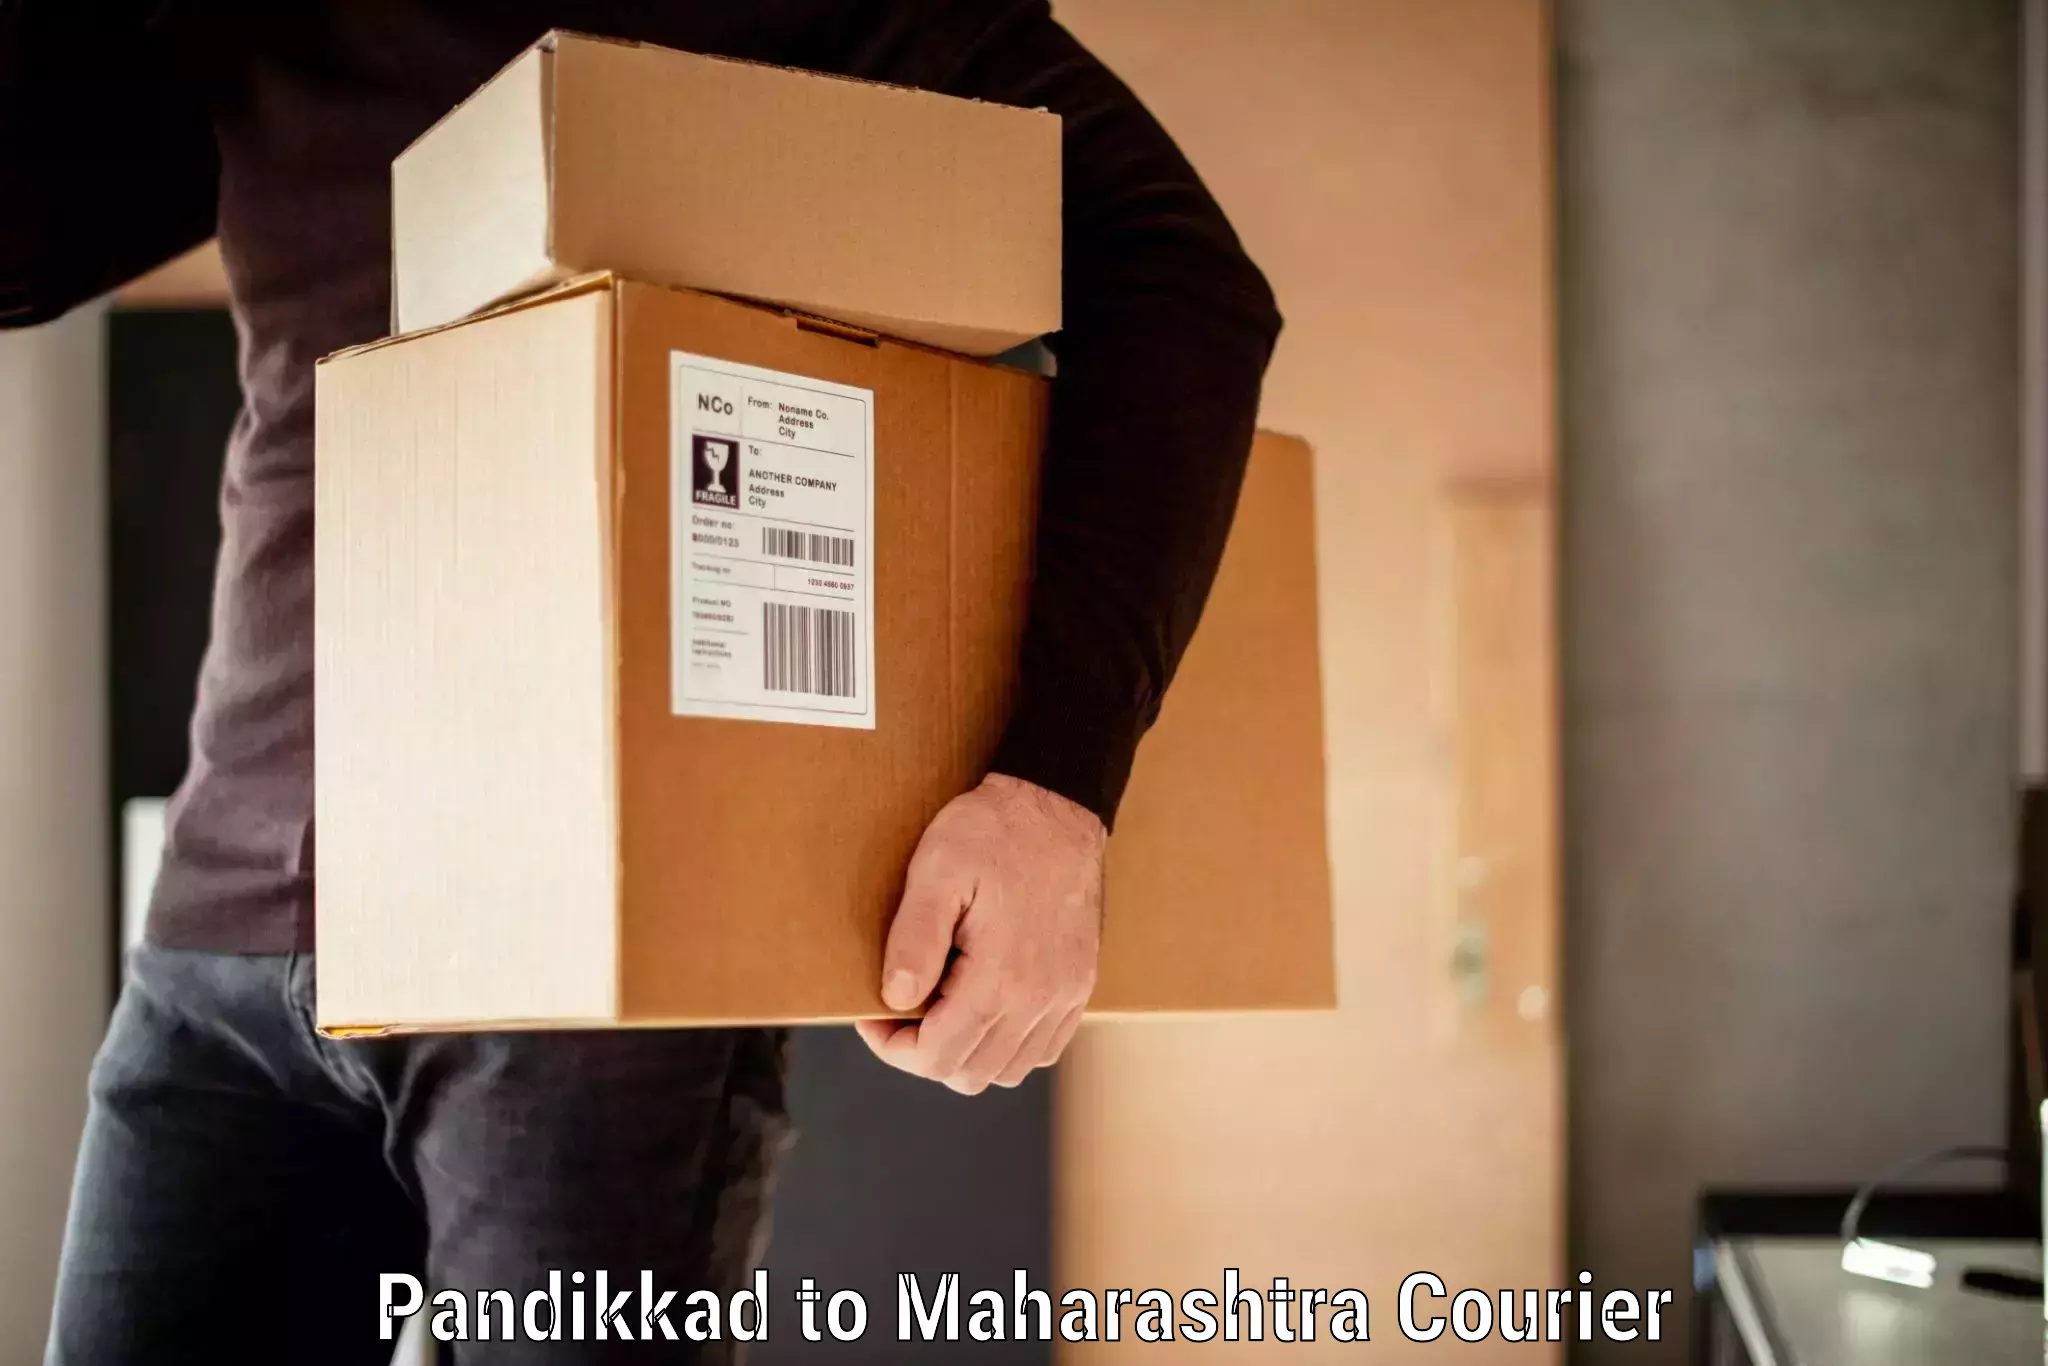 Luggage delivery app Pandikkad to Kalyan